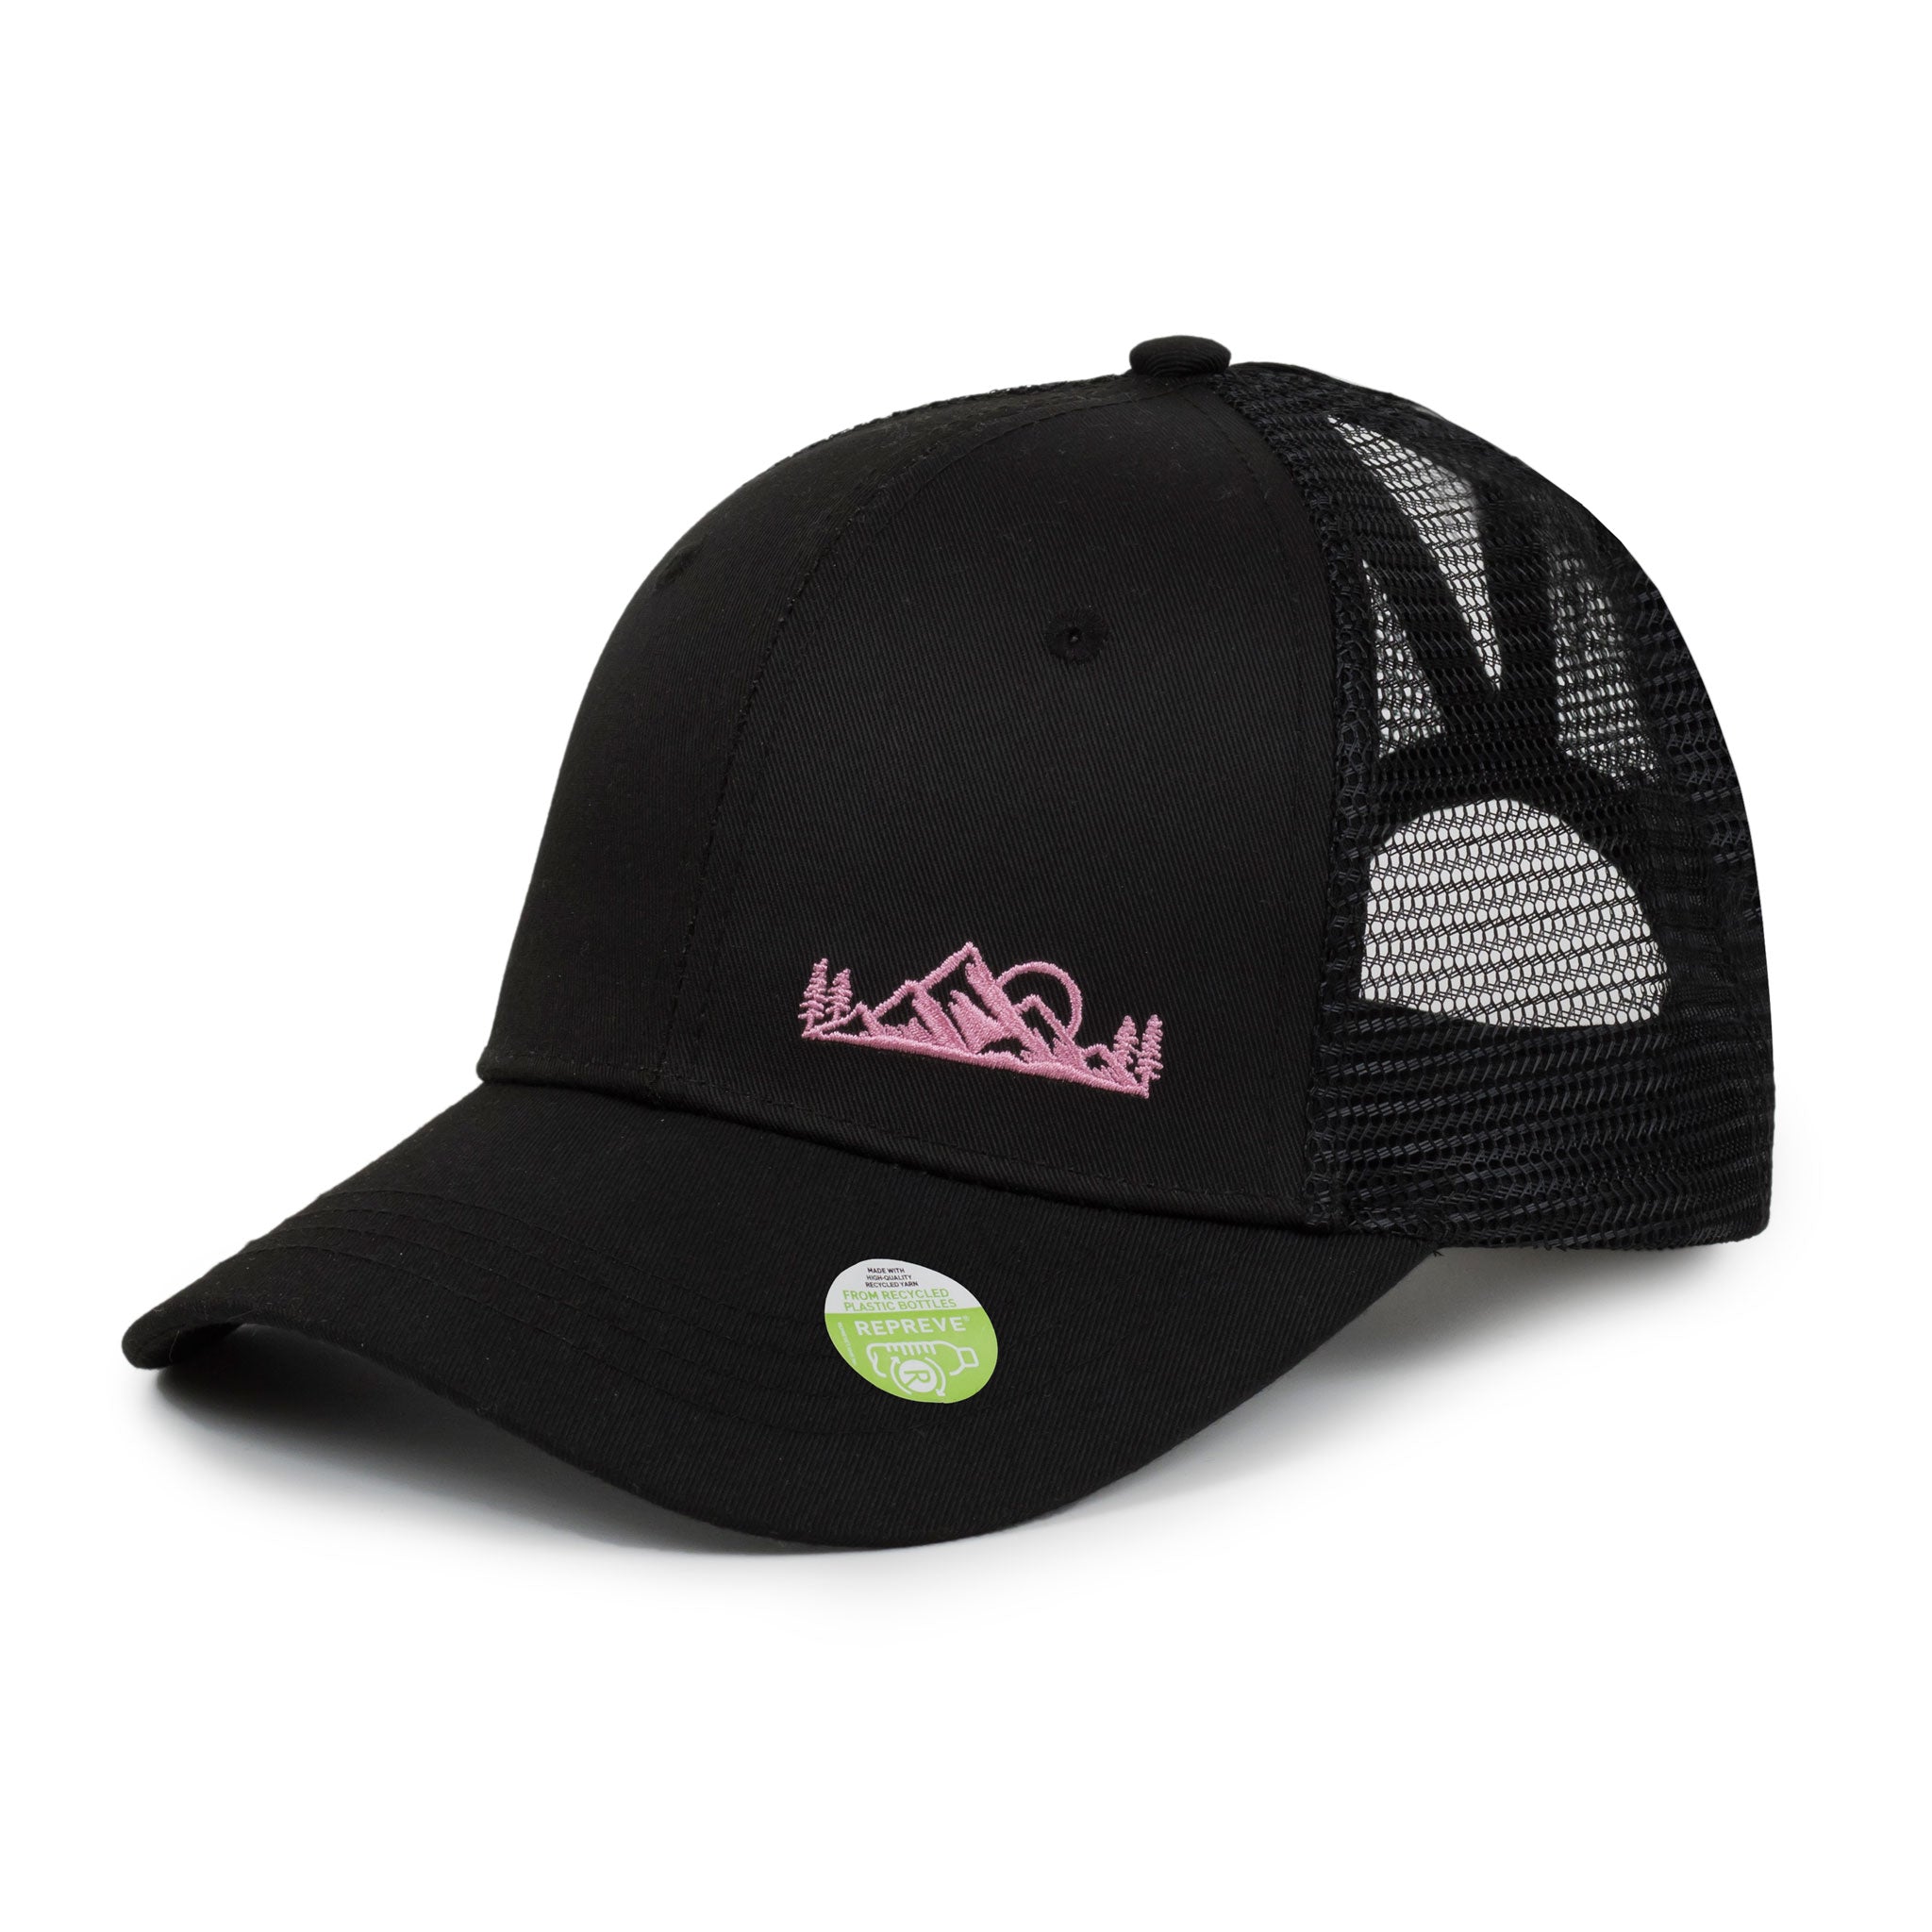 Shop Women's Hats – Ecofera Shop Canada